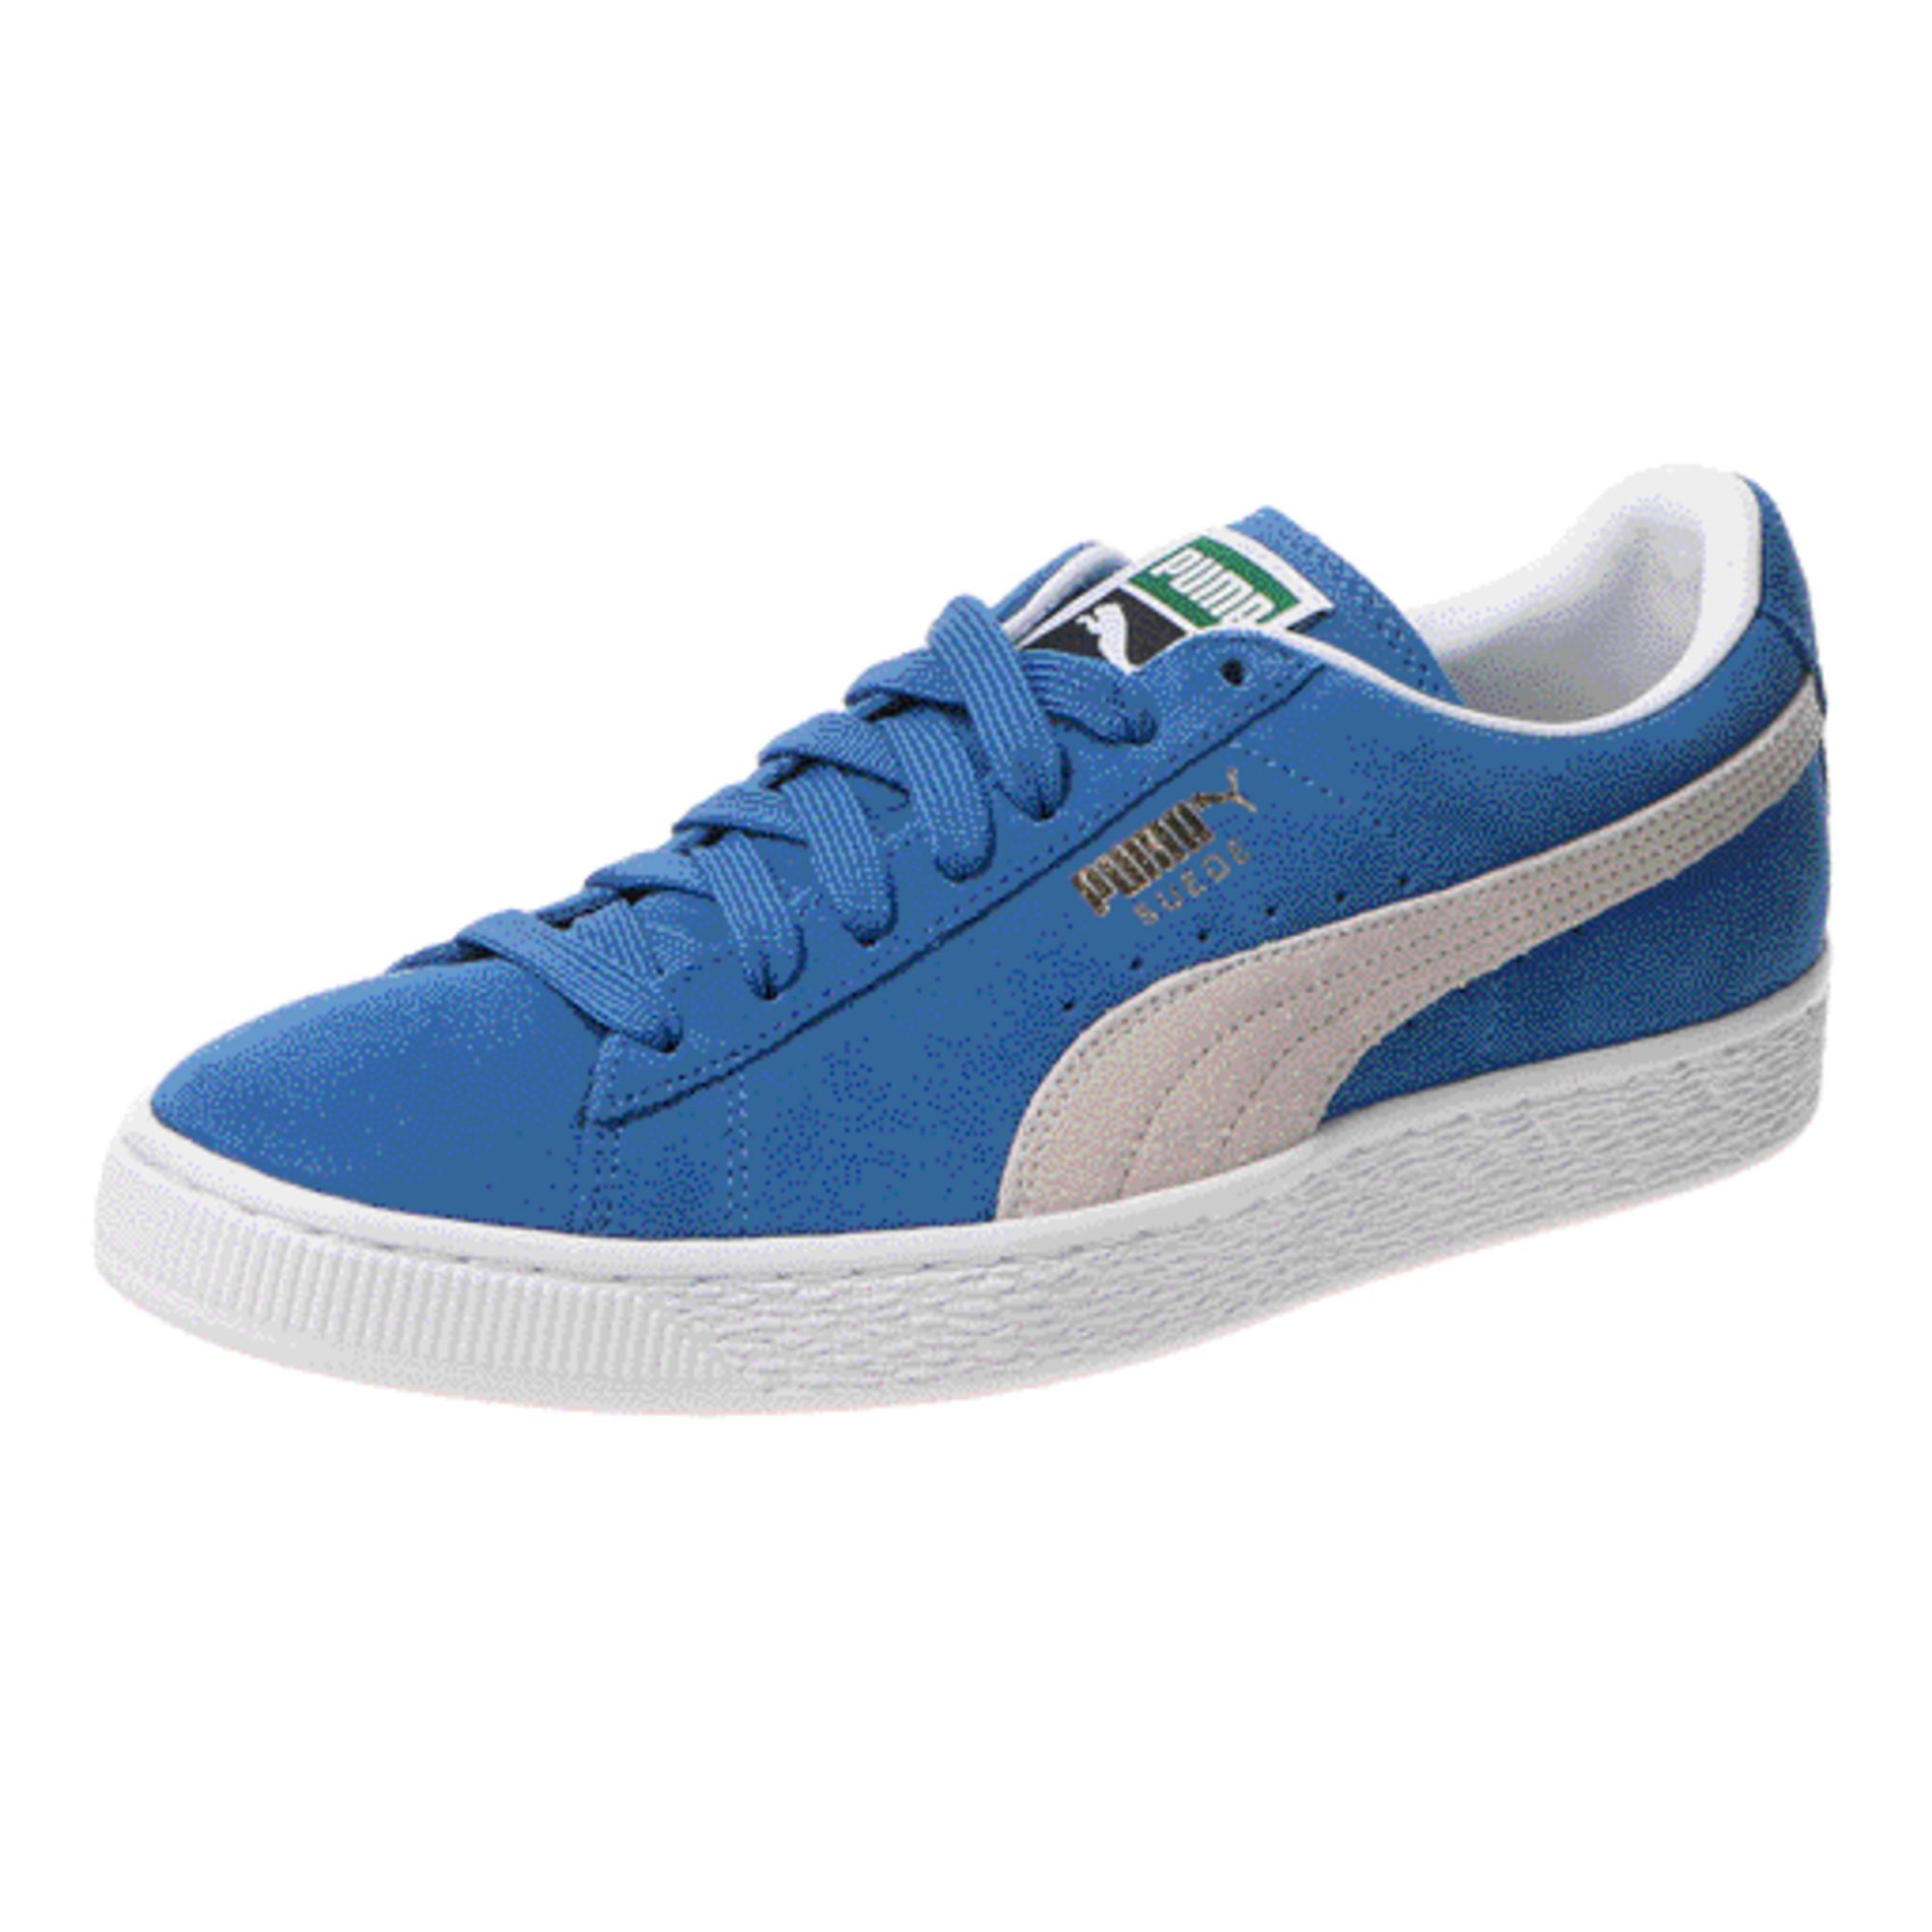 PUMA Suede Classic+ Sneakers in 64 (Blue) - Lyst